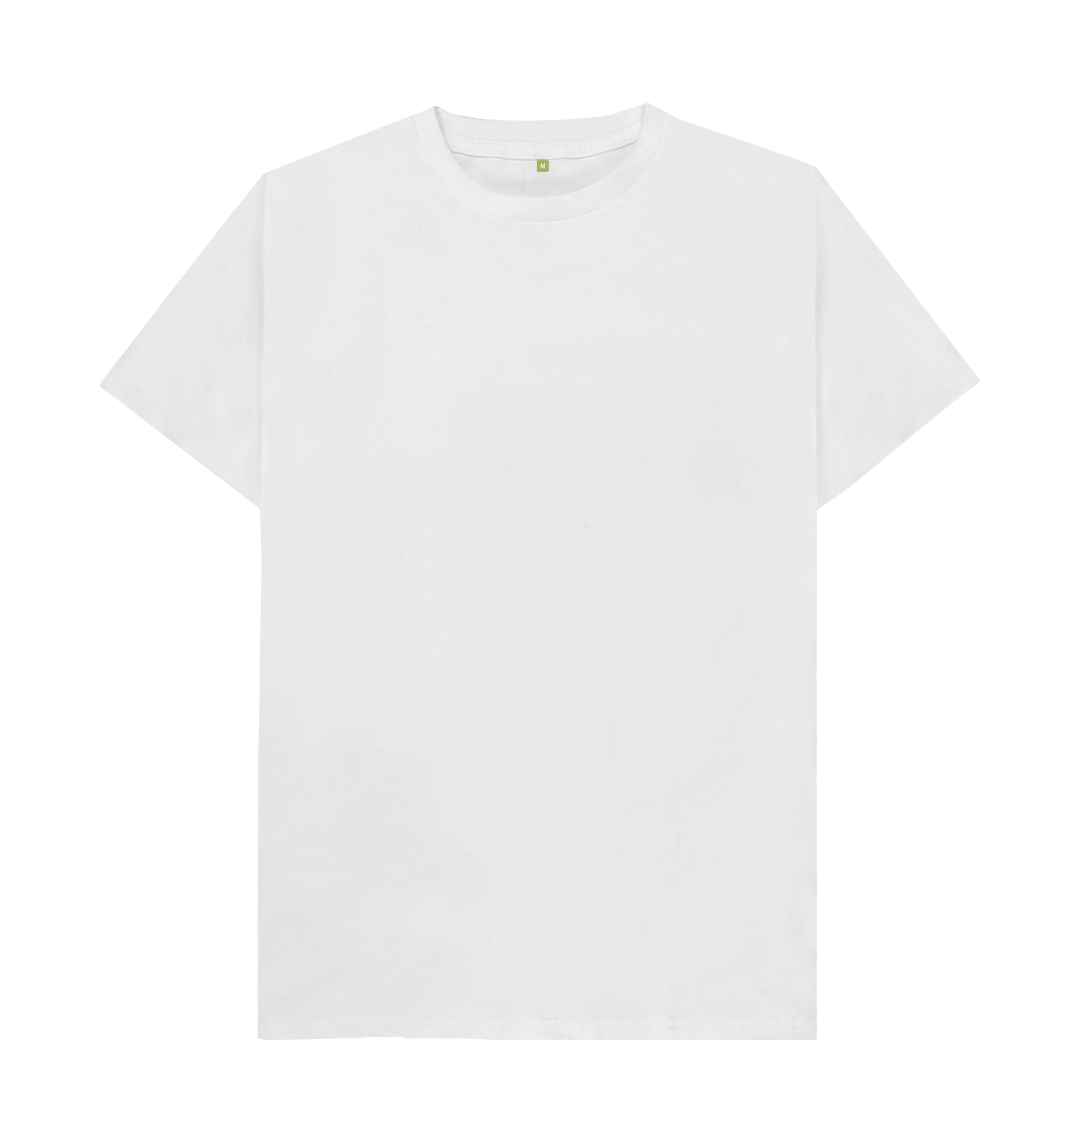 plain white t shirt transparent 